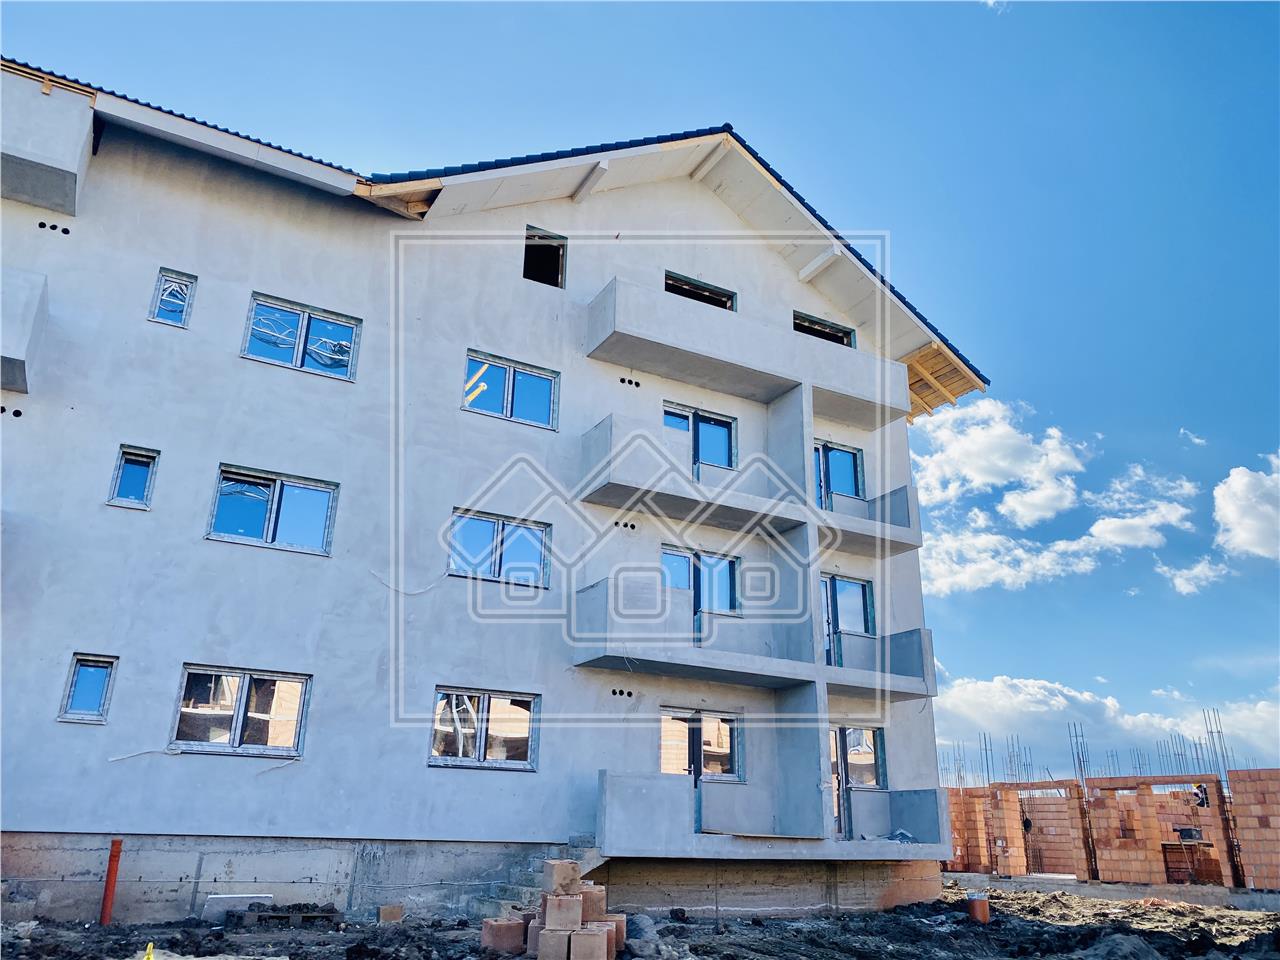 Apartament de vanzare in Sibiu - 2 camere, 2 bai,balcon- Doamna Stanca